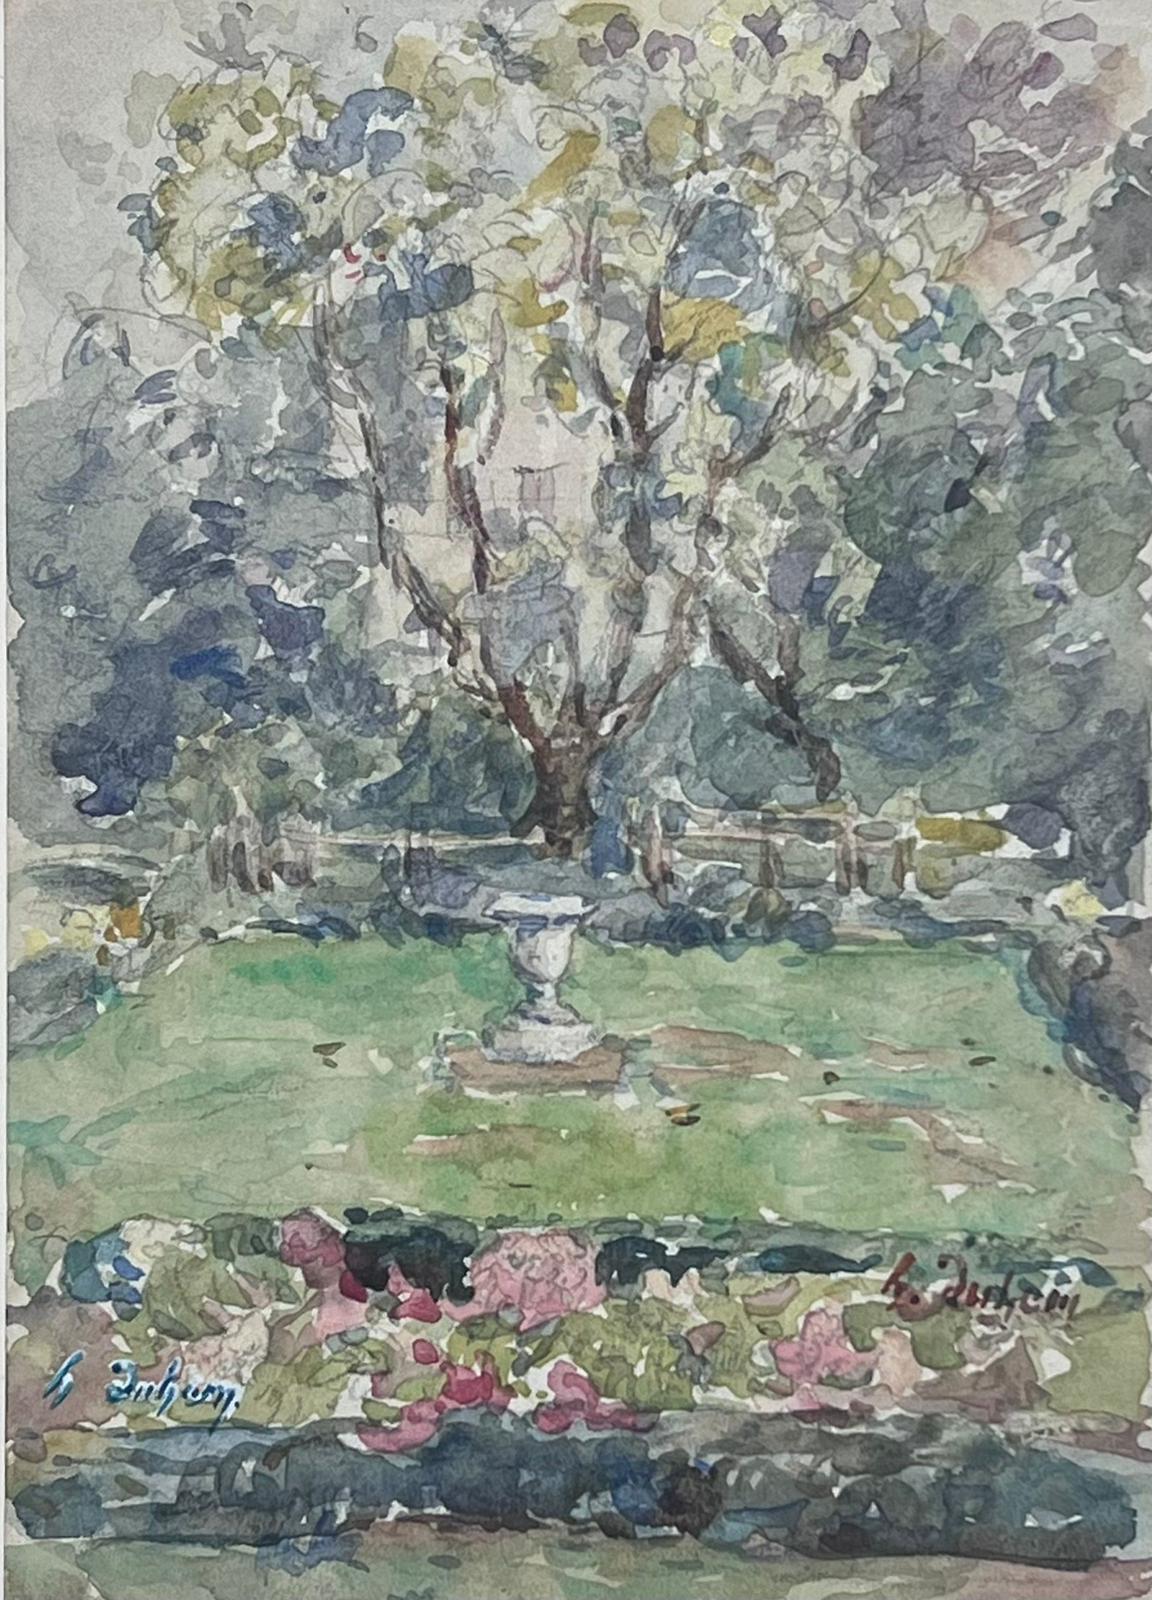 Belle peinture impressionniste française ancienne vue d'un parc avec urne en pierre